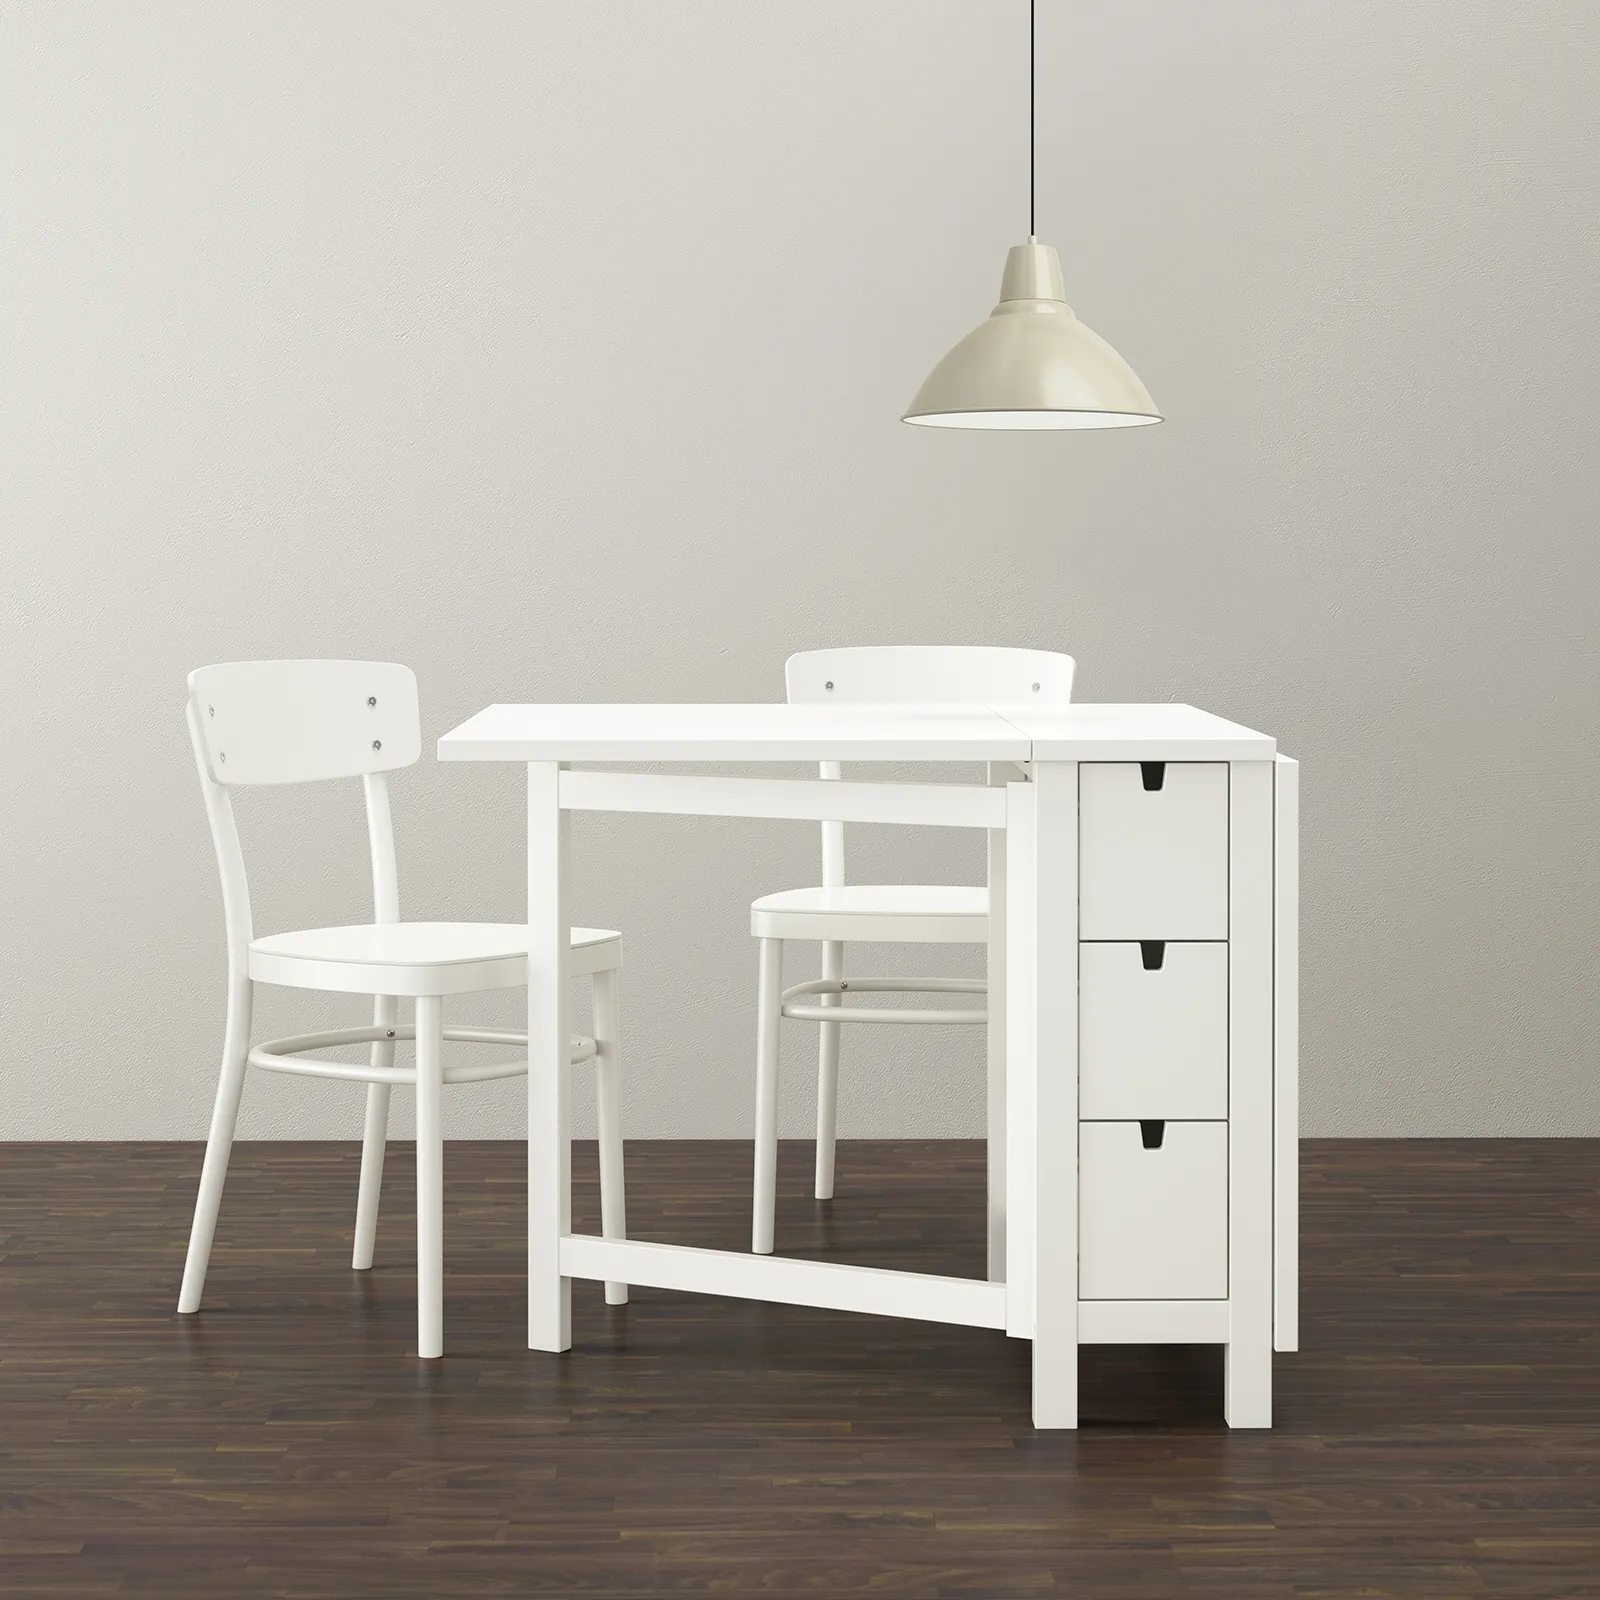 Ikea consolle arredi comodi e pratici tavoli for Consolle per cucina